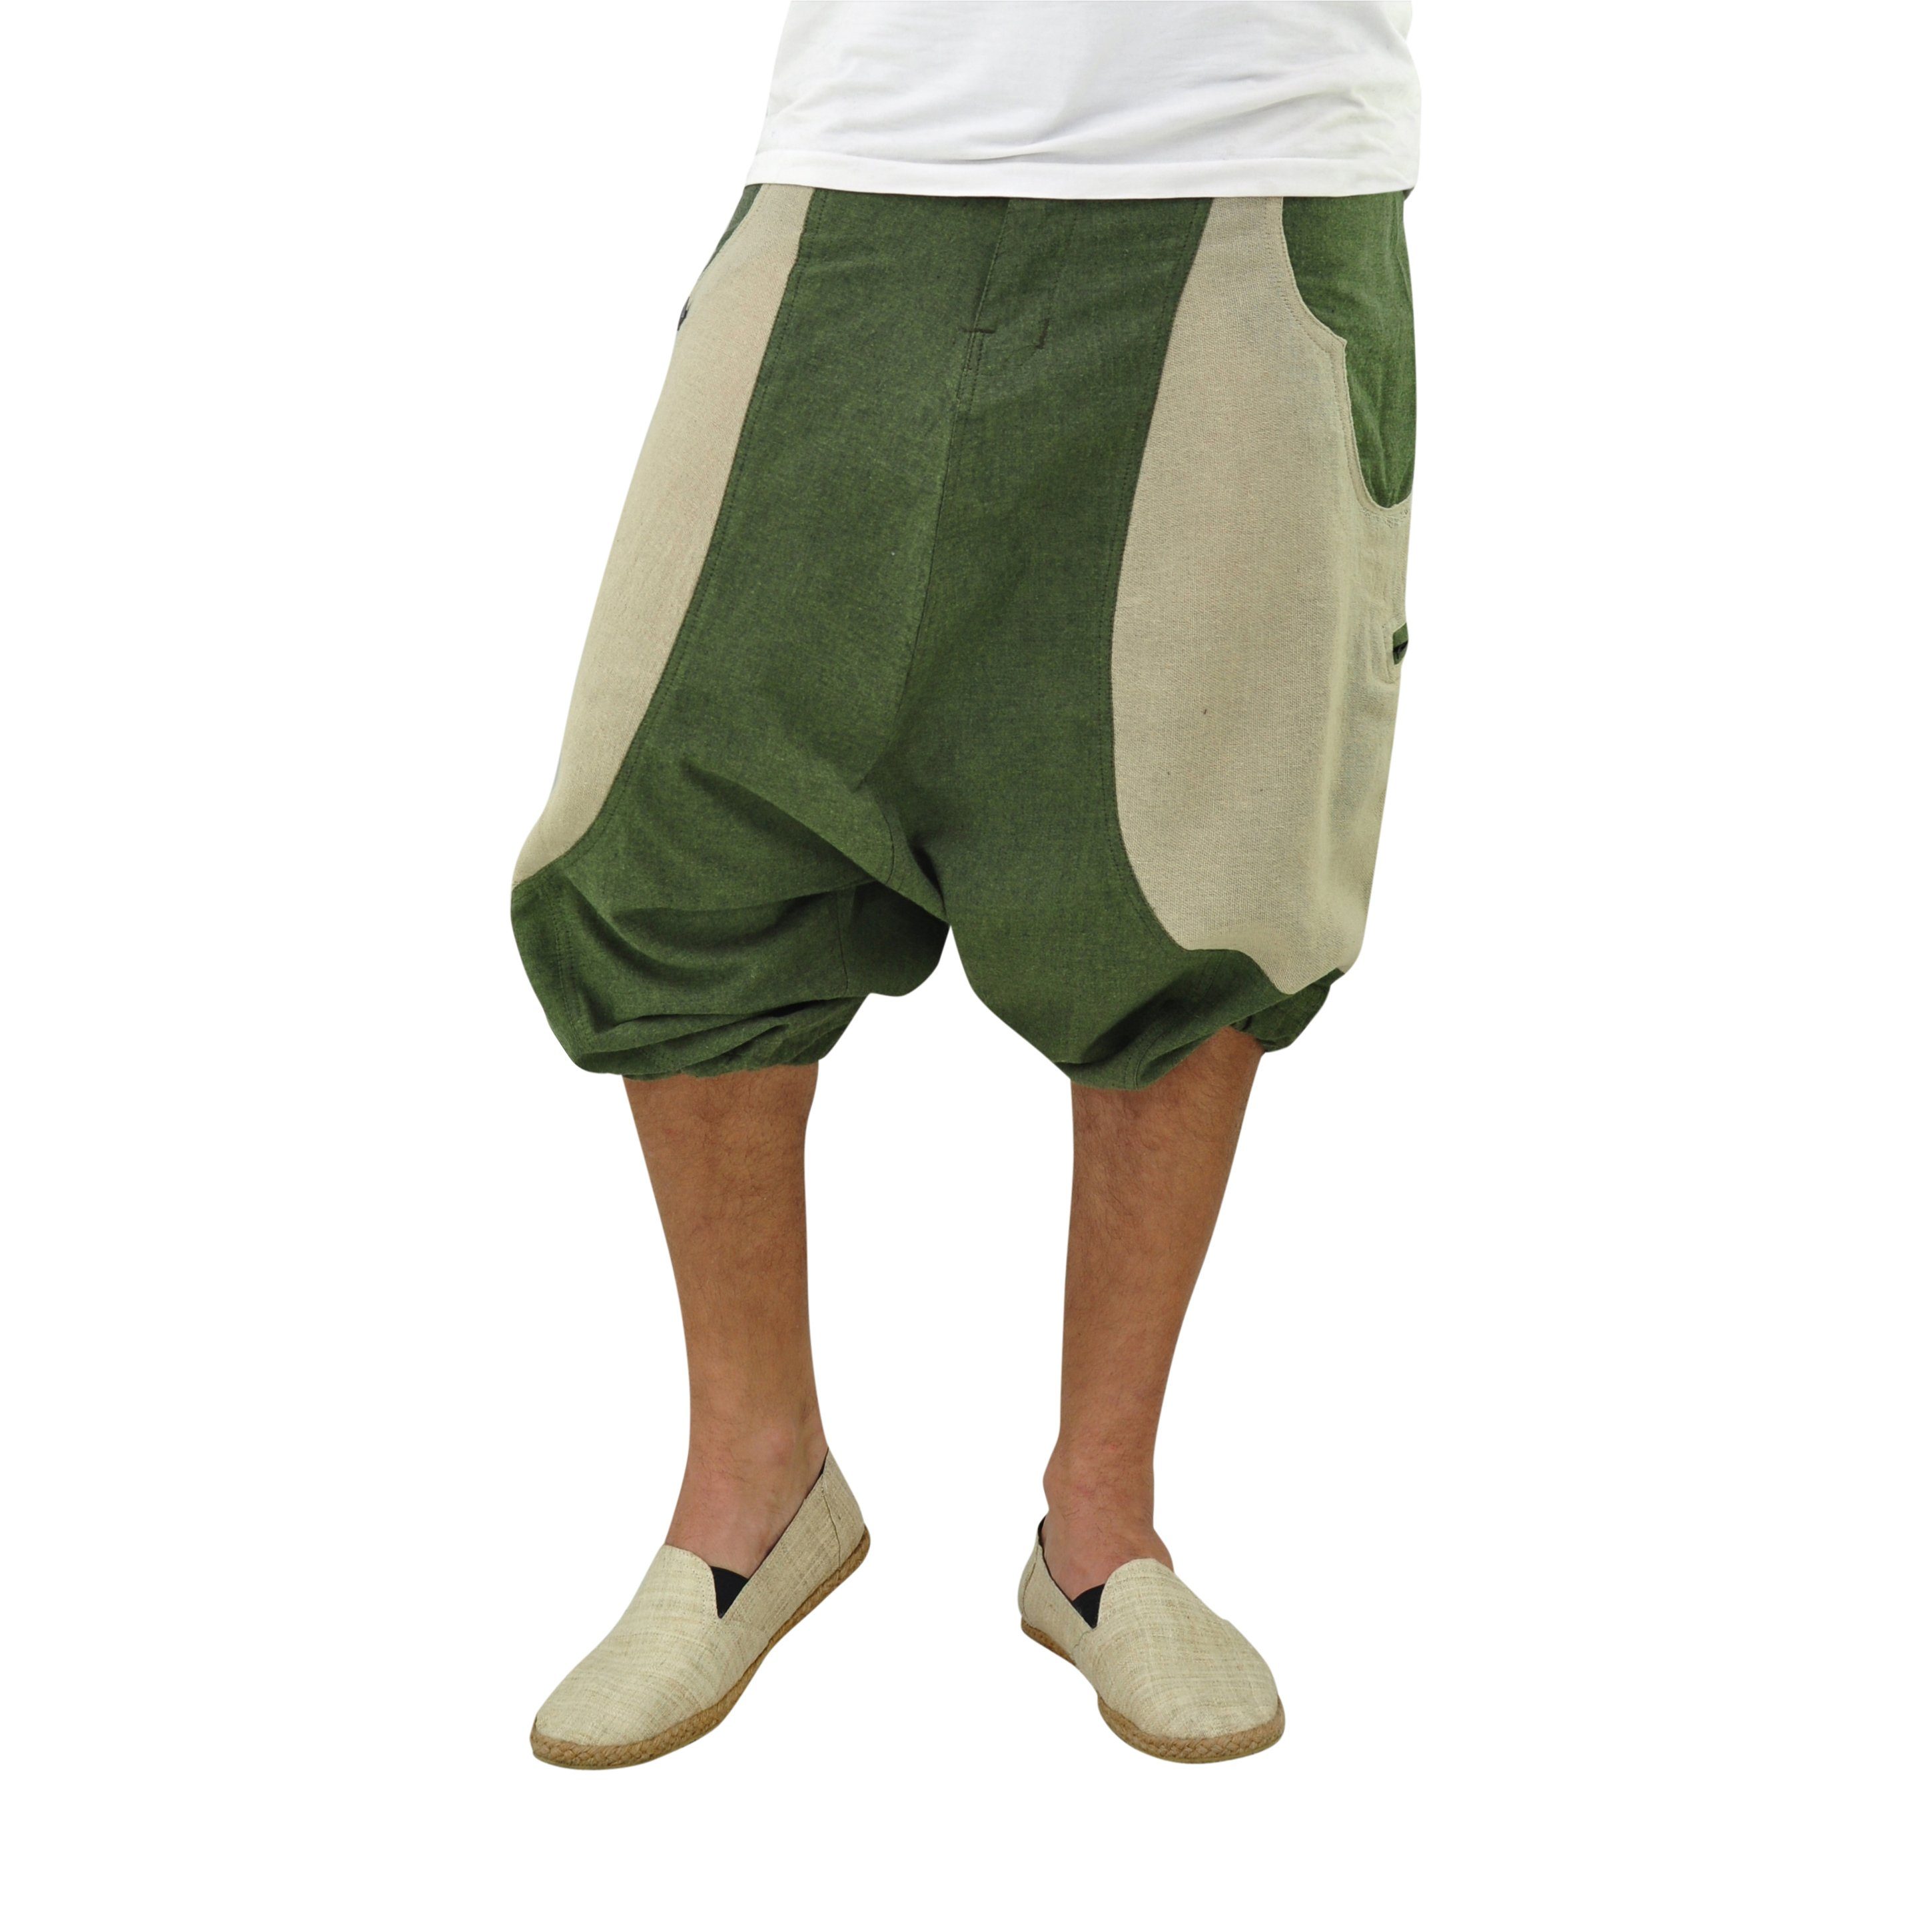 & grün Shorts Goa Unisex, Haremshose virblatt Haremshose kurze 2 kurz mitteltief Schritt, Farbblock-Design, Reißverschlusstaschen fallender Herren Damen, Hose